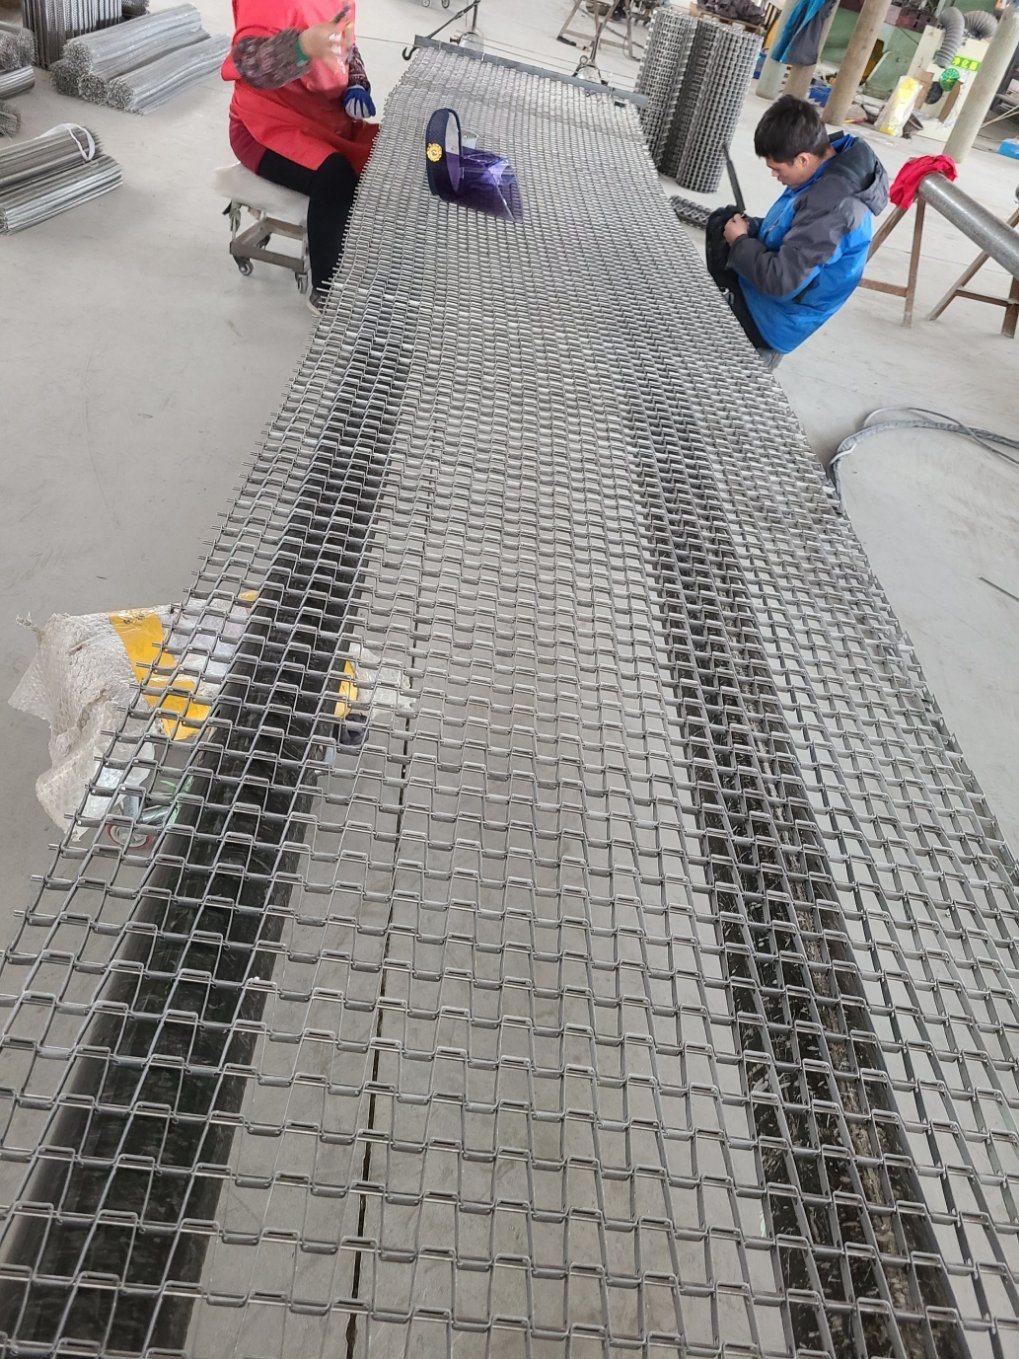 Stainless Steel Conveyor Metal Wire Mesh Belt for Roasting Food Stuff